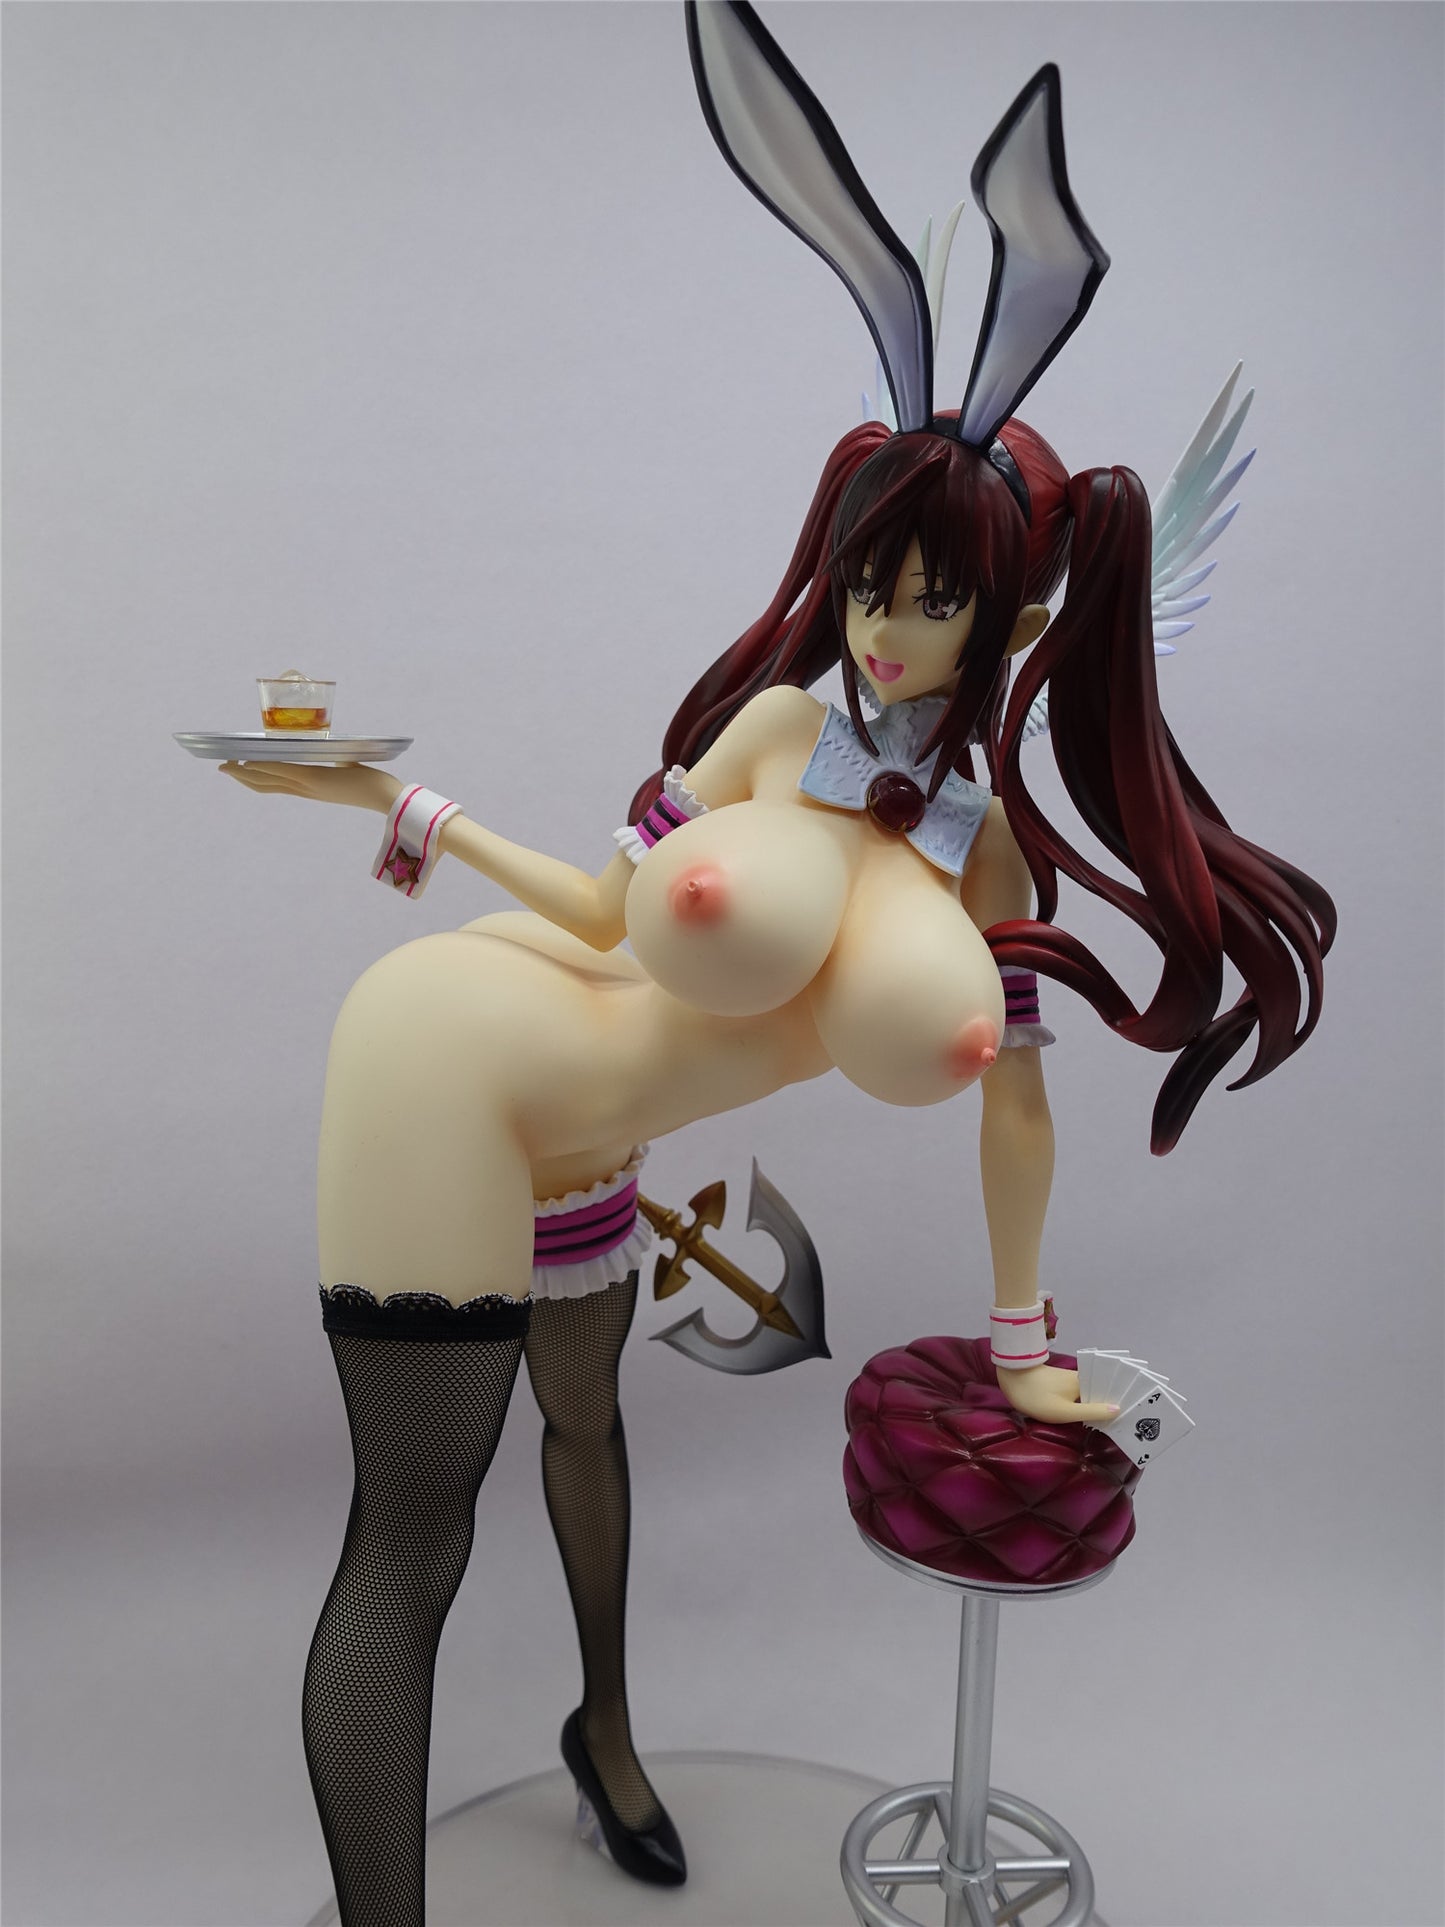 Mahou Shoujo – Kuramoto Erika bunny huge breast 1/4 naked anime figure sexy collectible action figures